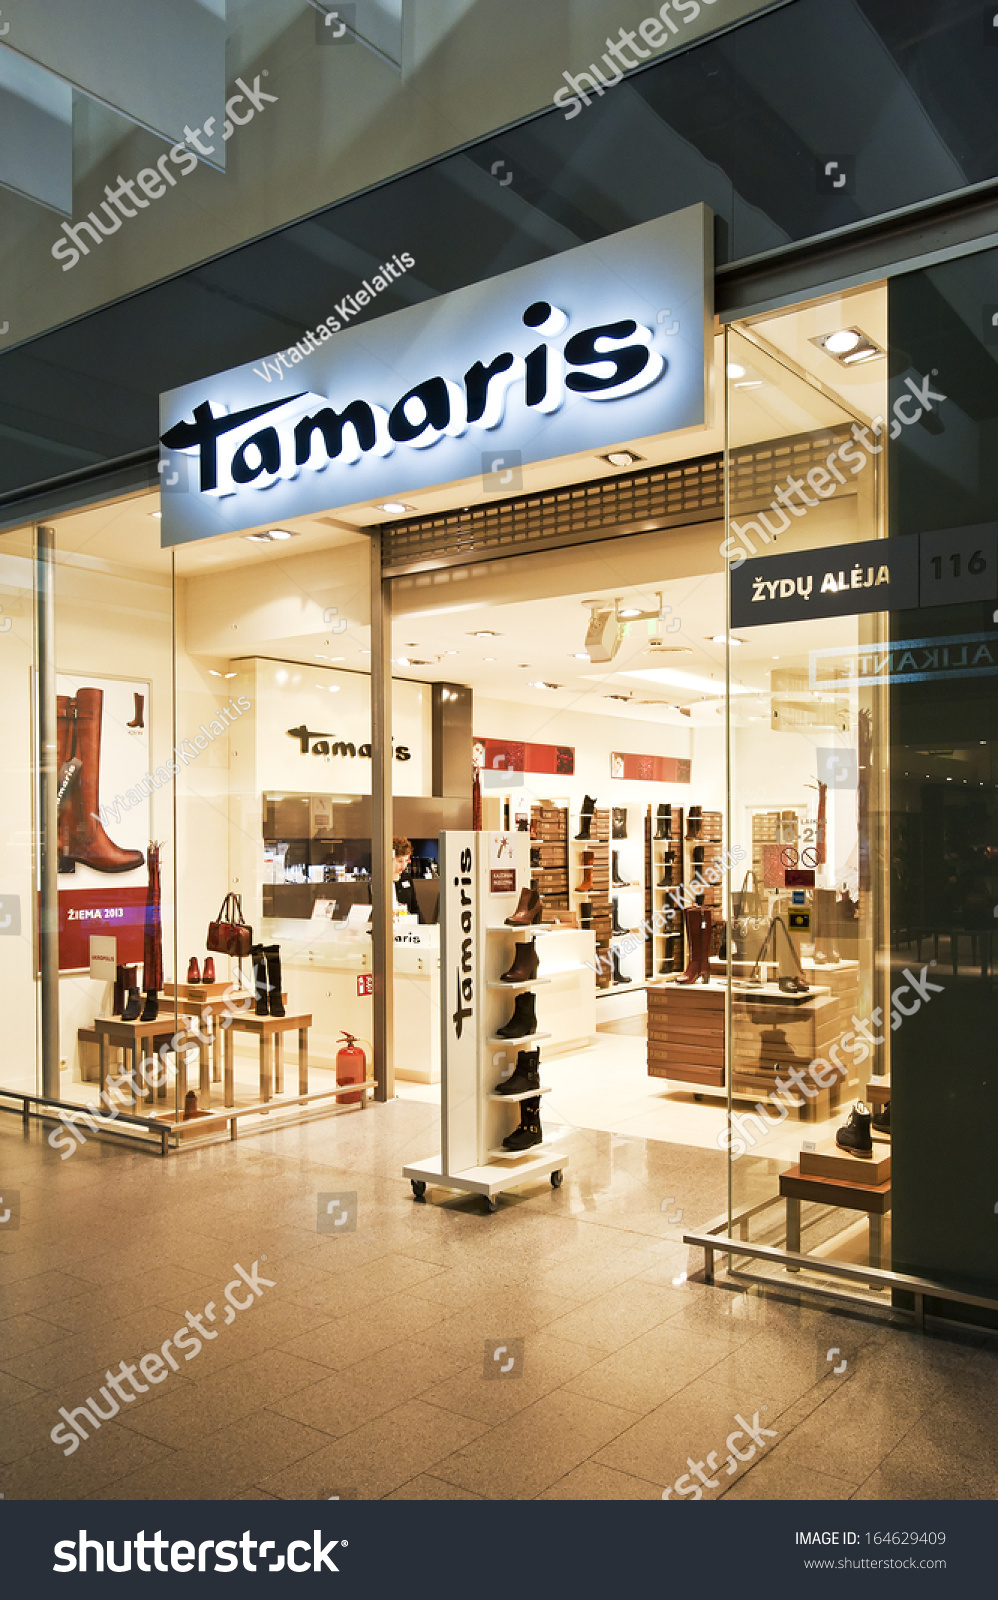 Verslijten ding Verzadigen Klaipeda November 24 Tamaris Store On Stock Photo (Edit Now) 164629409